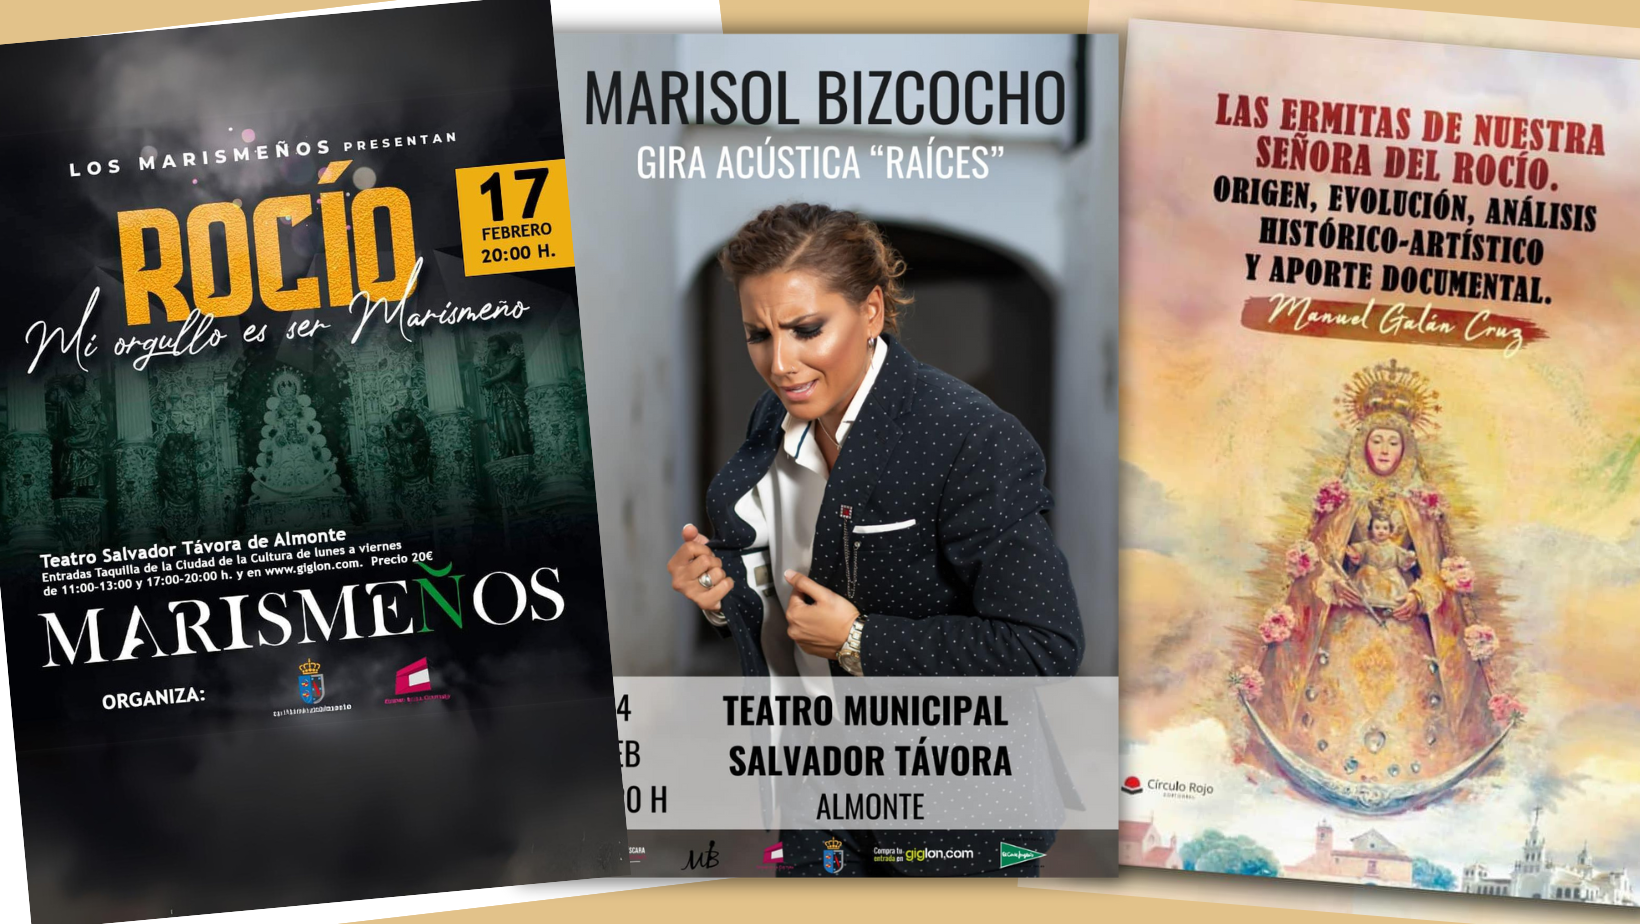 Marismeños y Marisol Bizcocho ponen música a la programación especial Andalucía en Almonte